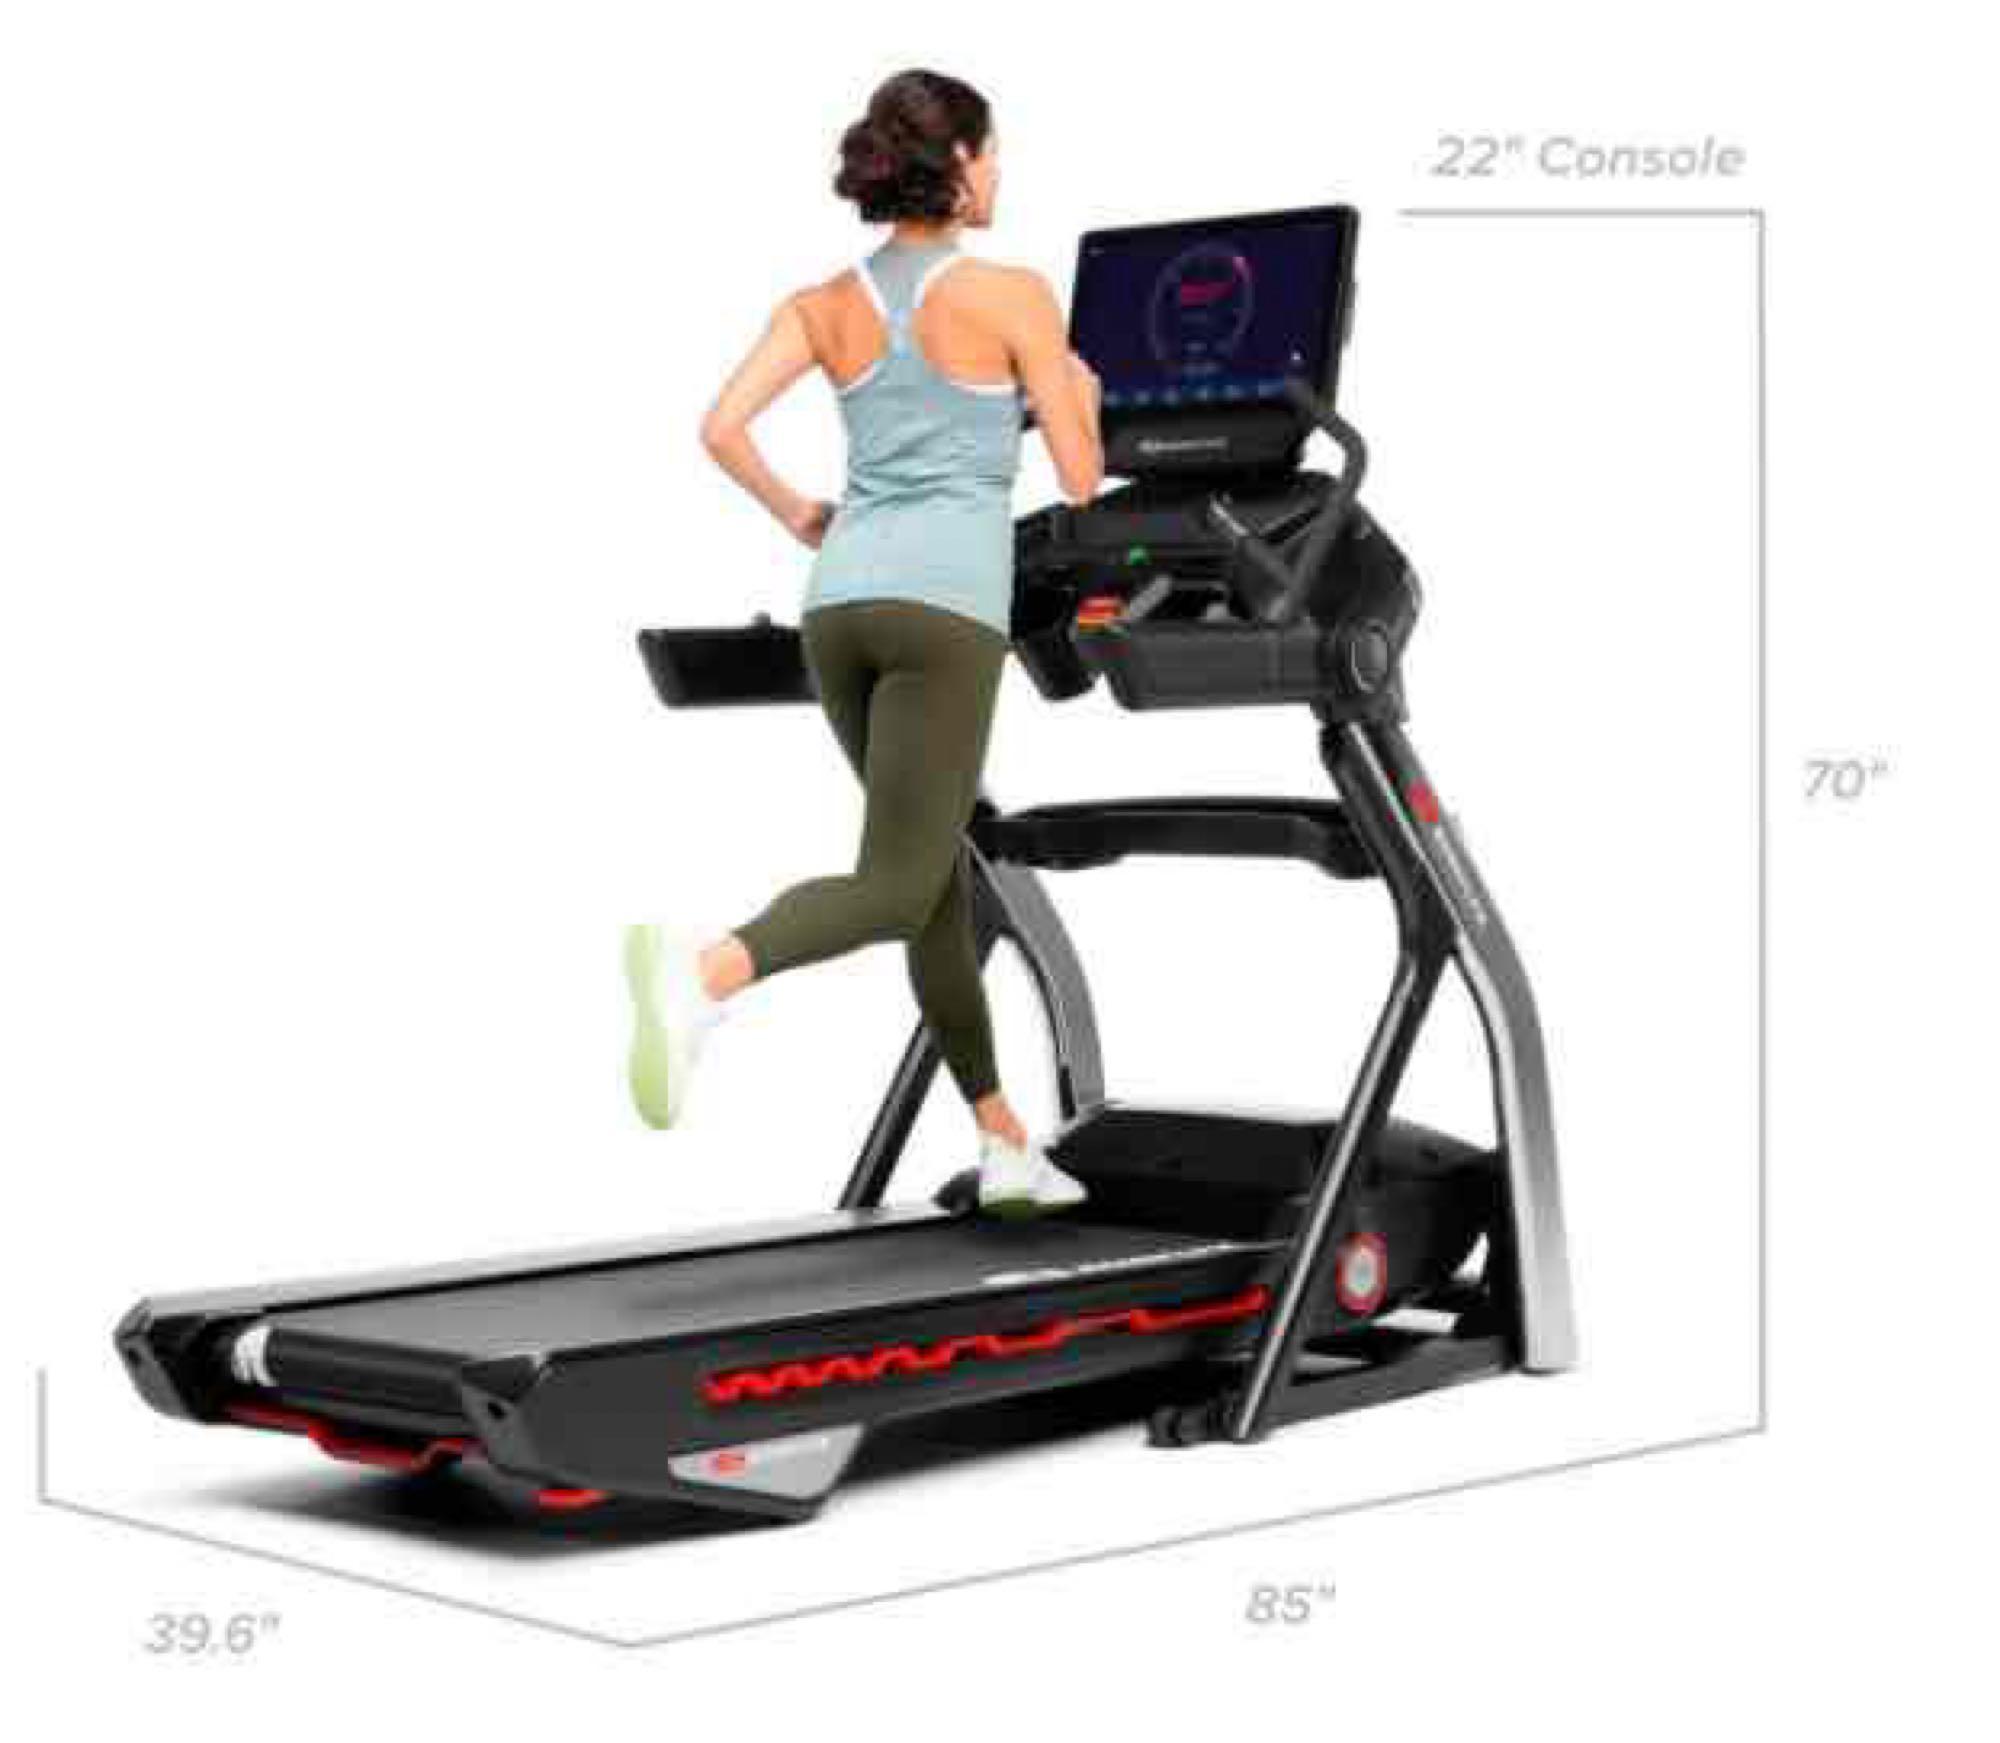 BowFlex - Treadmill 22